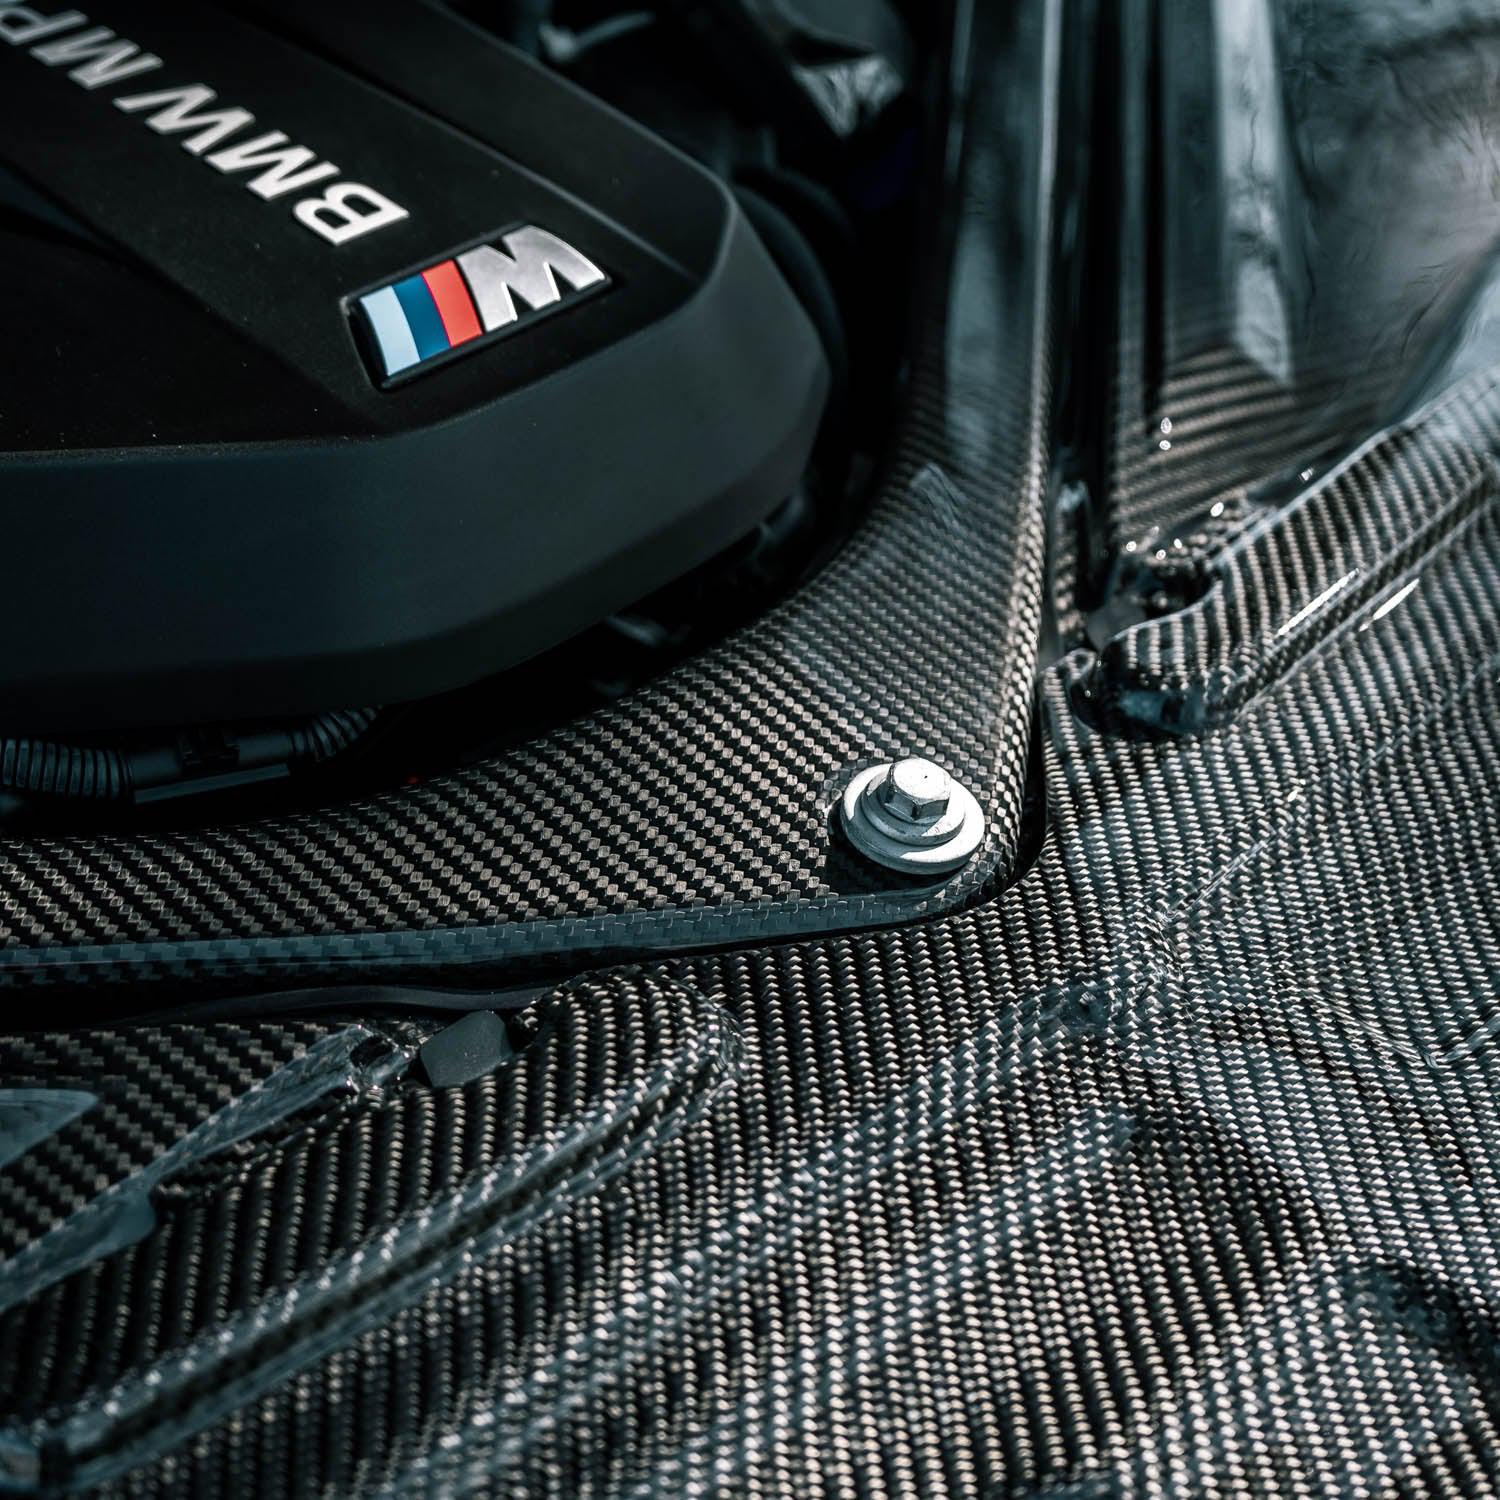 Hexon BMW M3/M4 Engine Strut Brace in Pre-Preg Carbon Fibre (G80/G82)-R44 Performance